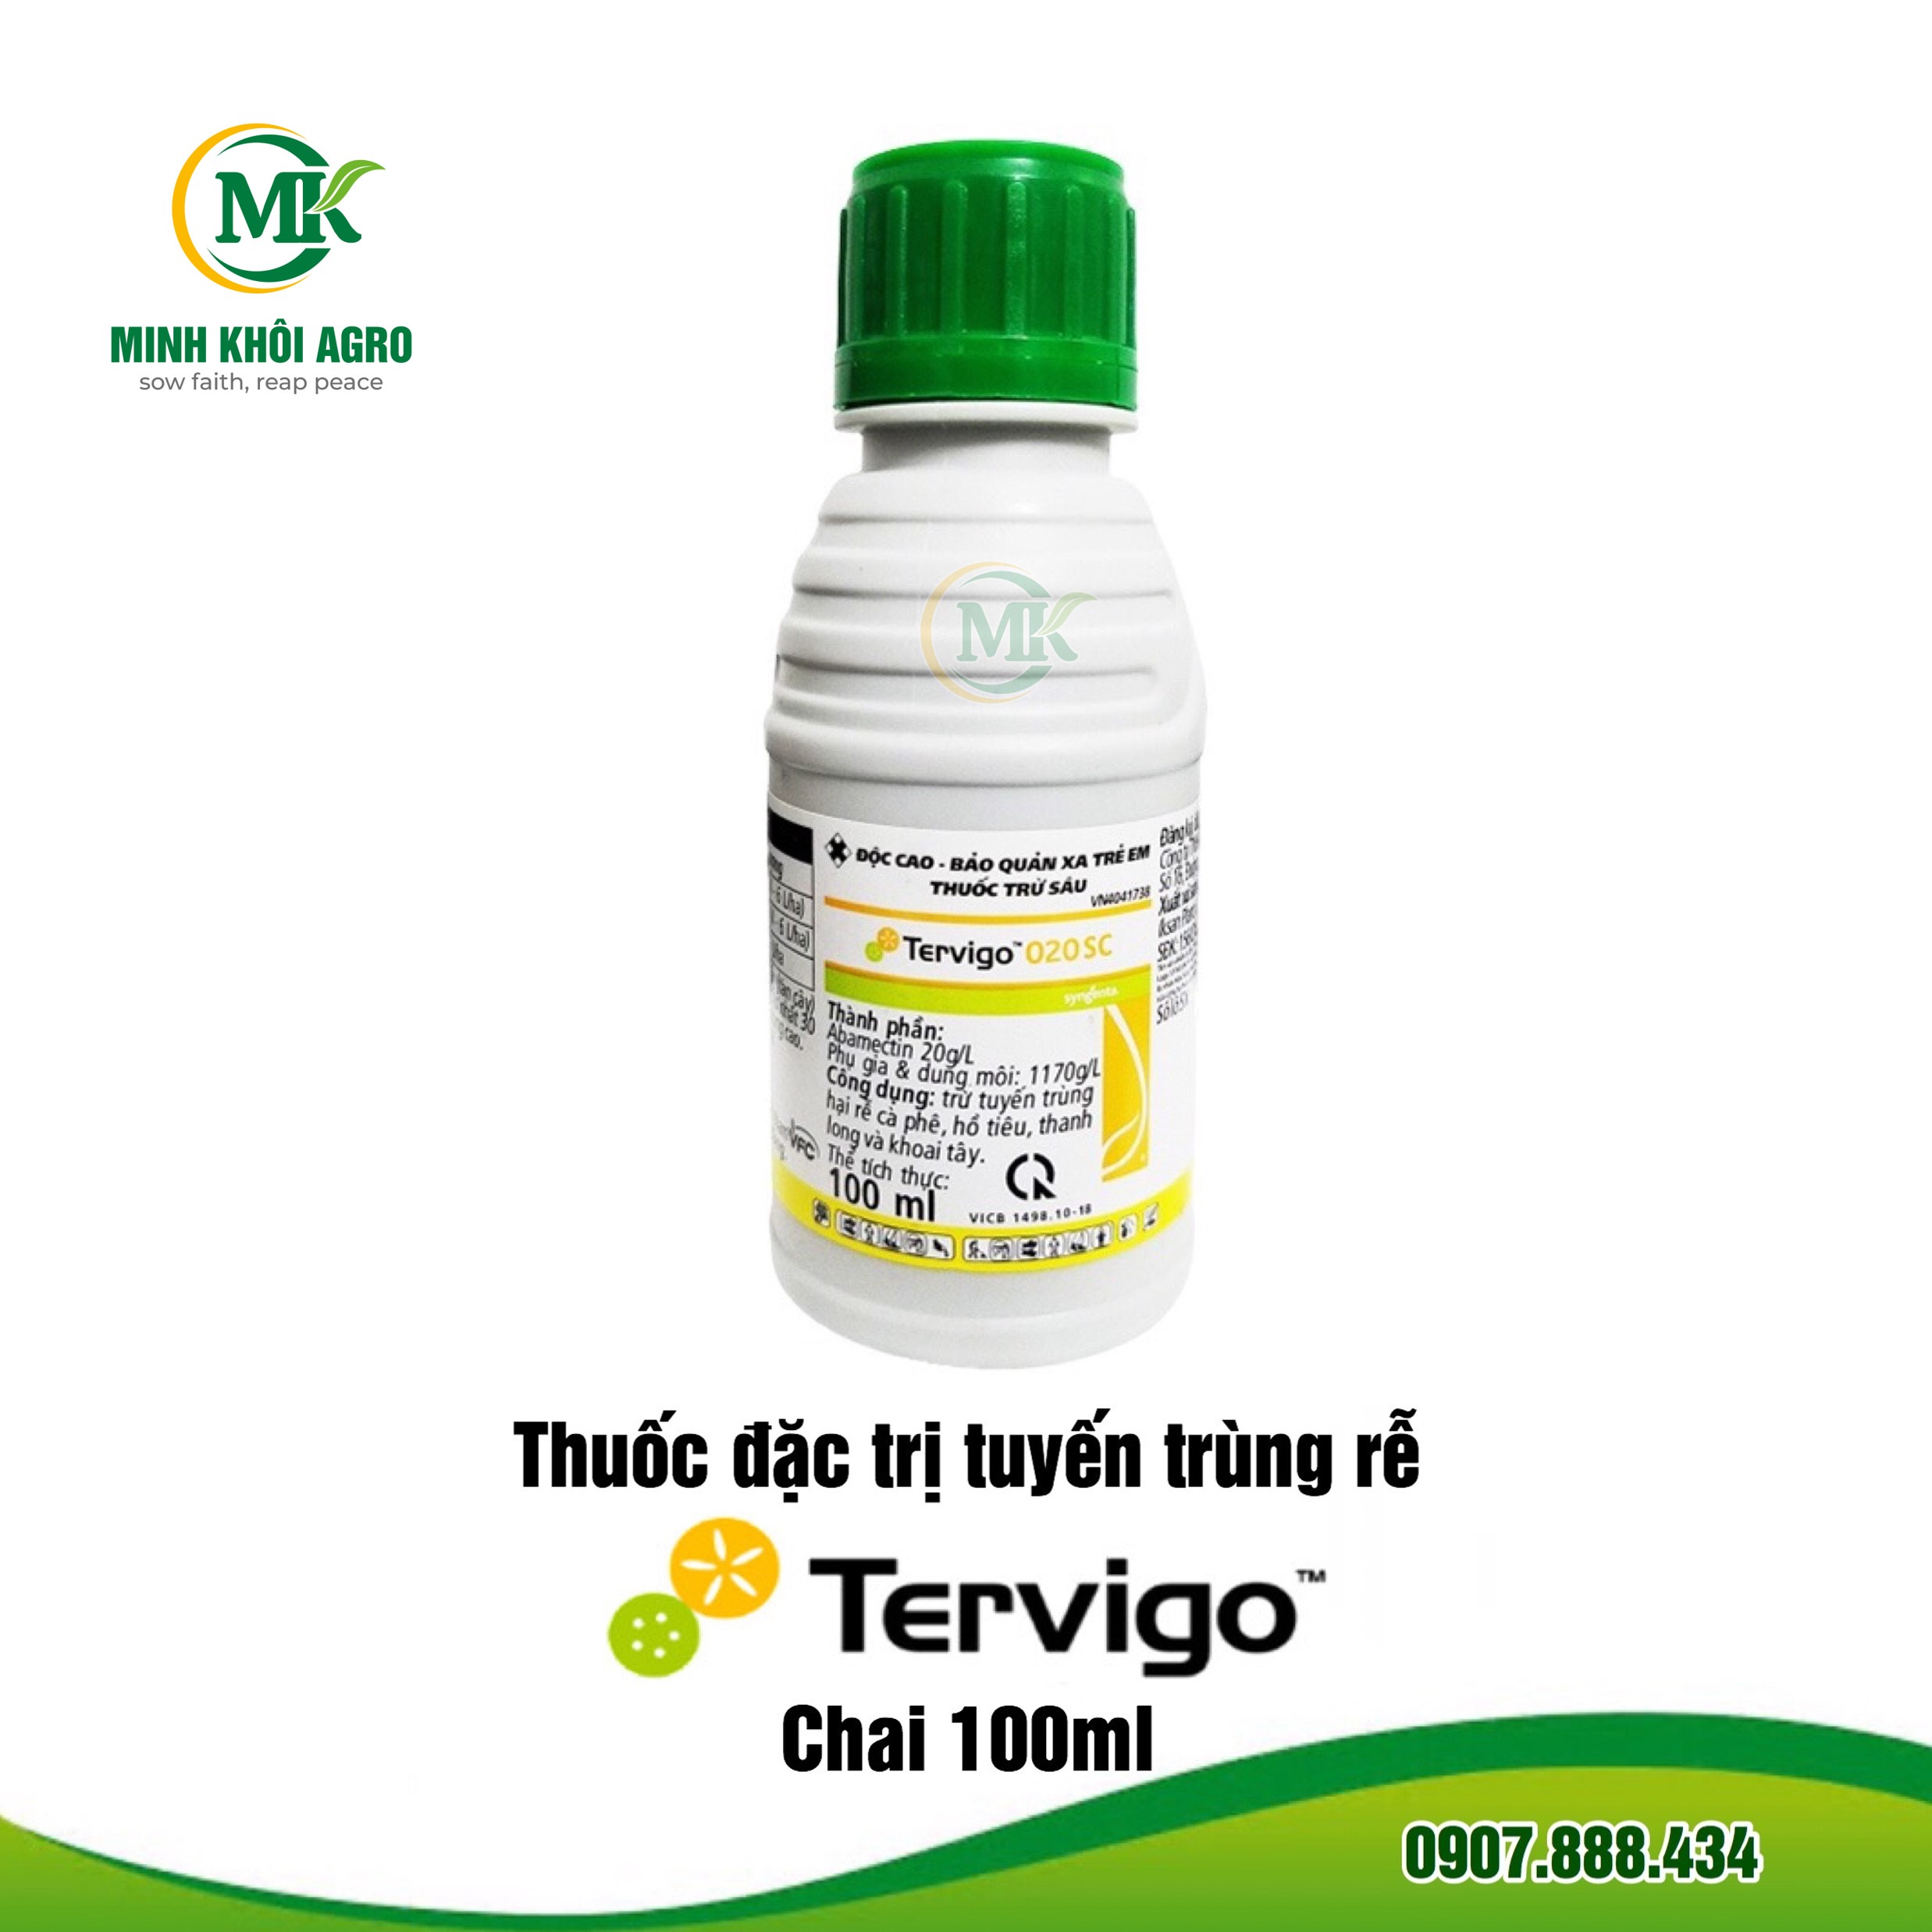 Thuốc đặc trị tuyến trùng Tervigo 020SC - Chai 100ml